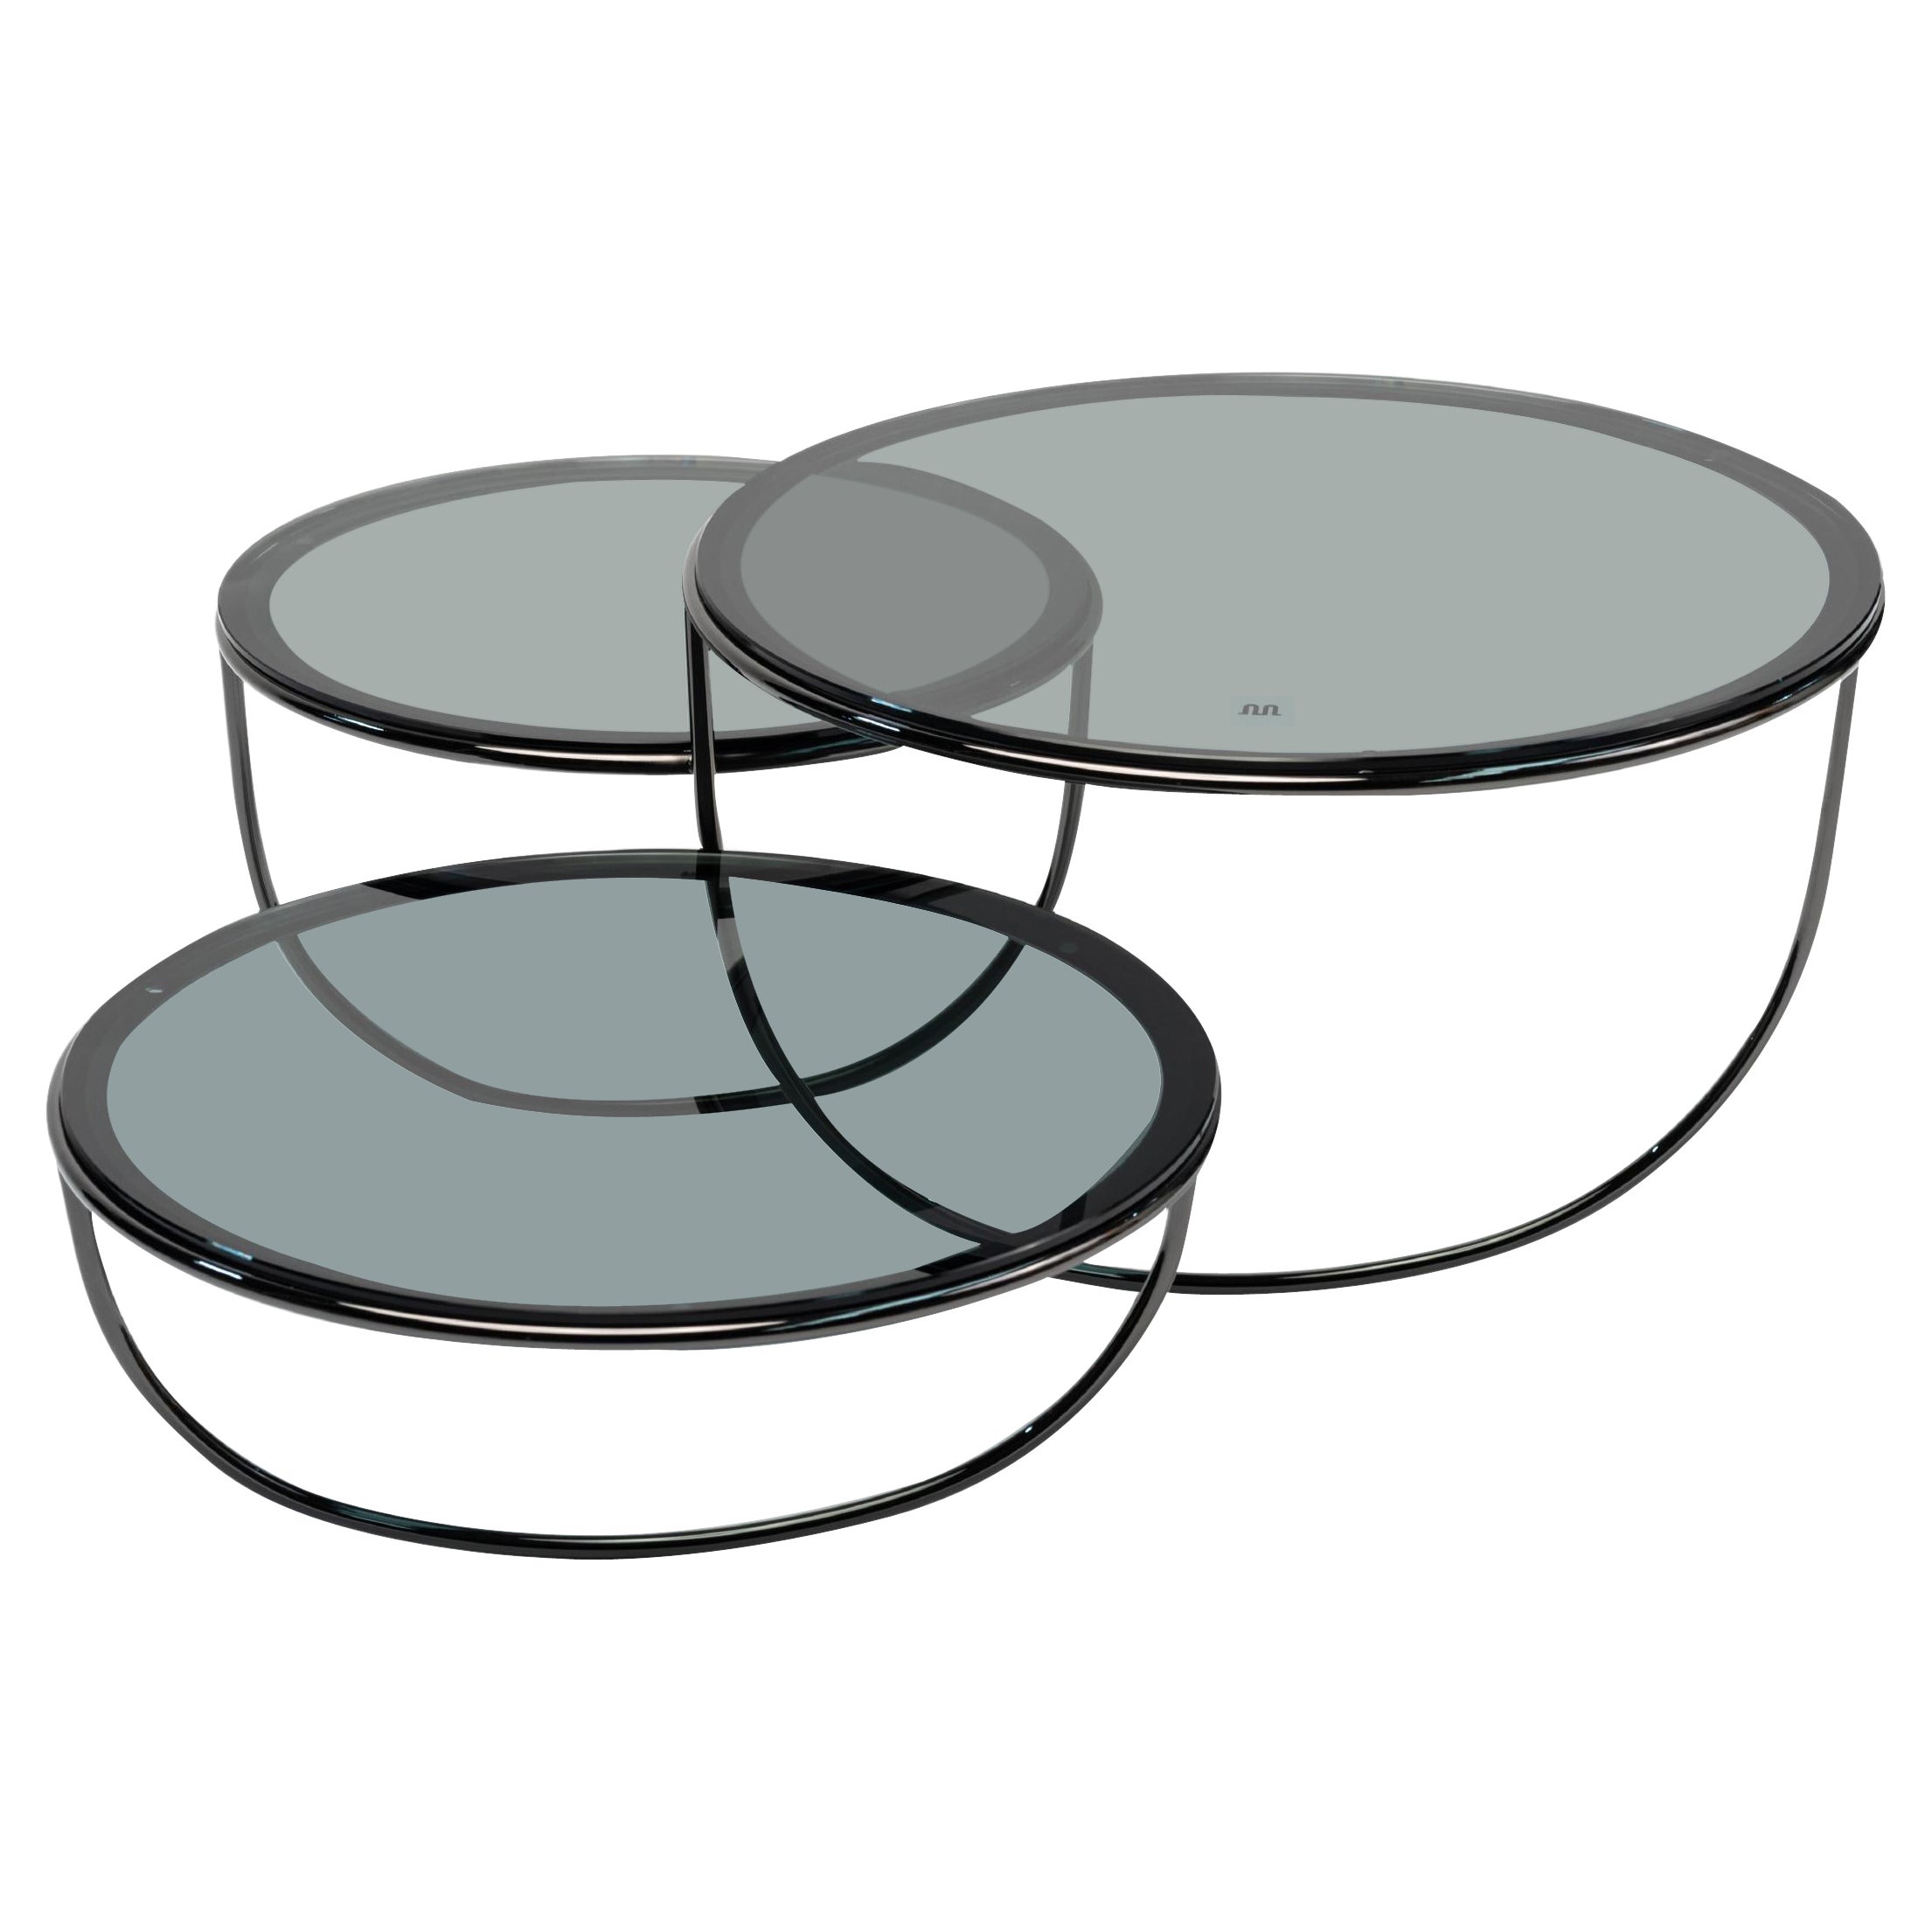 Manufacture-Paris Trio-Tisch, entworfen von Nendo